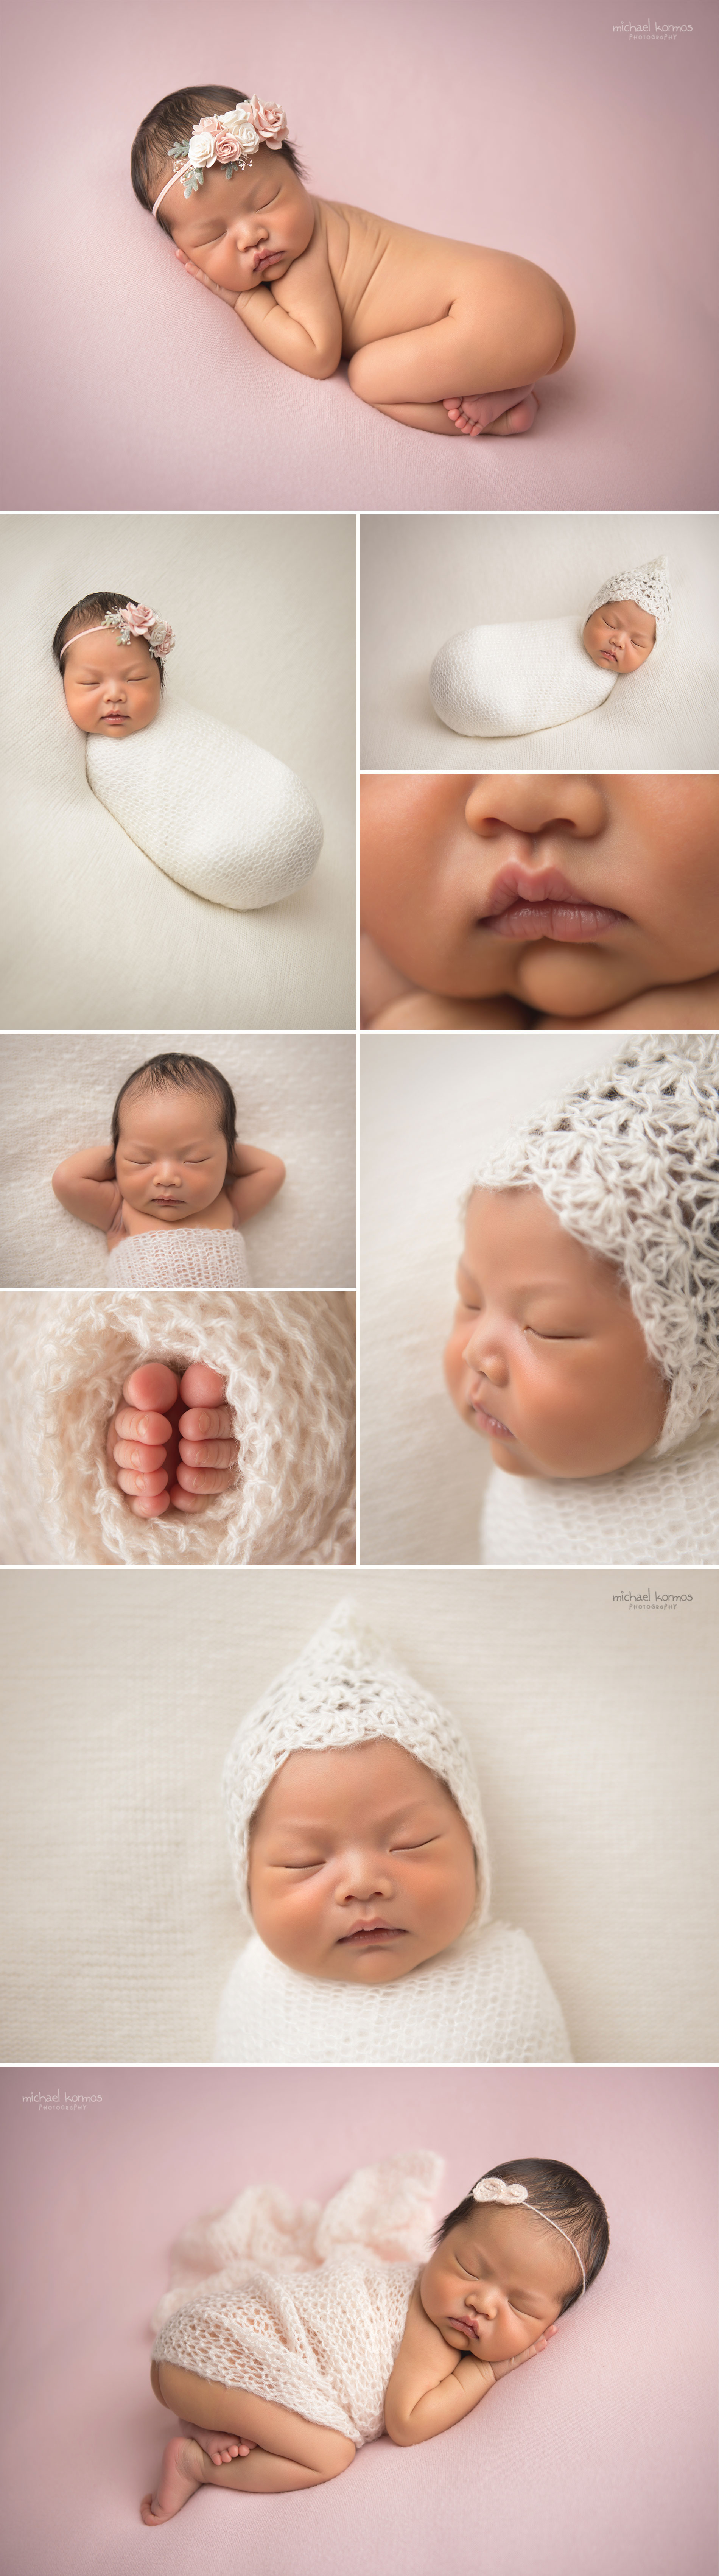 nyc newborn family studio photographer